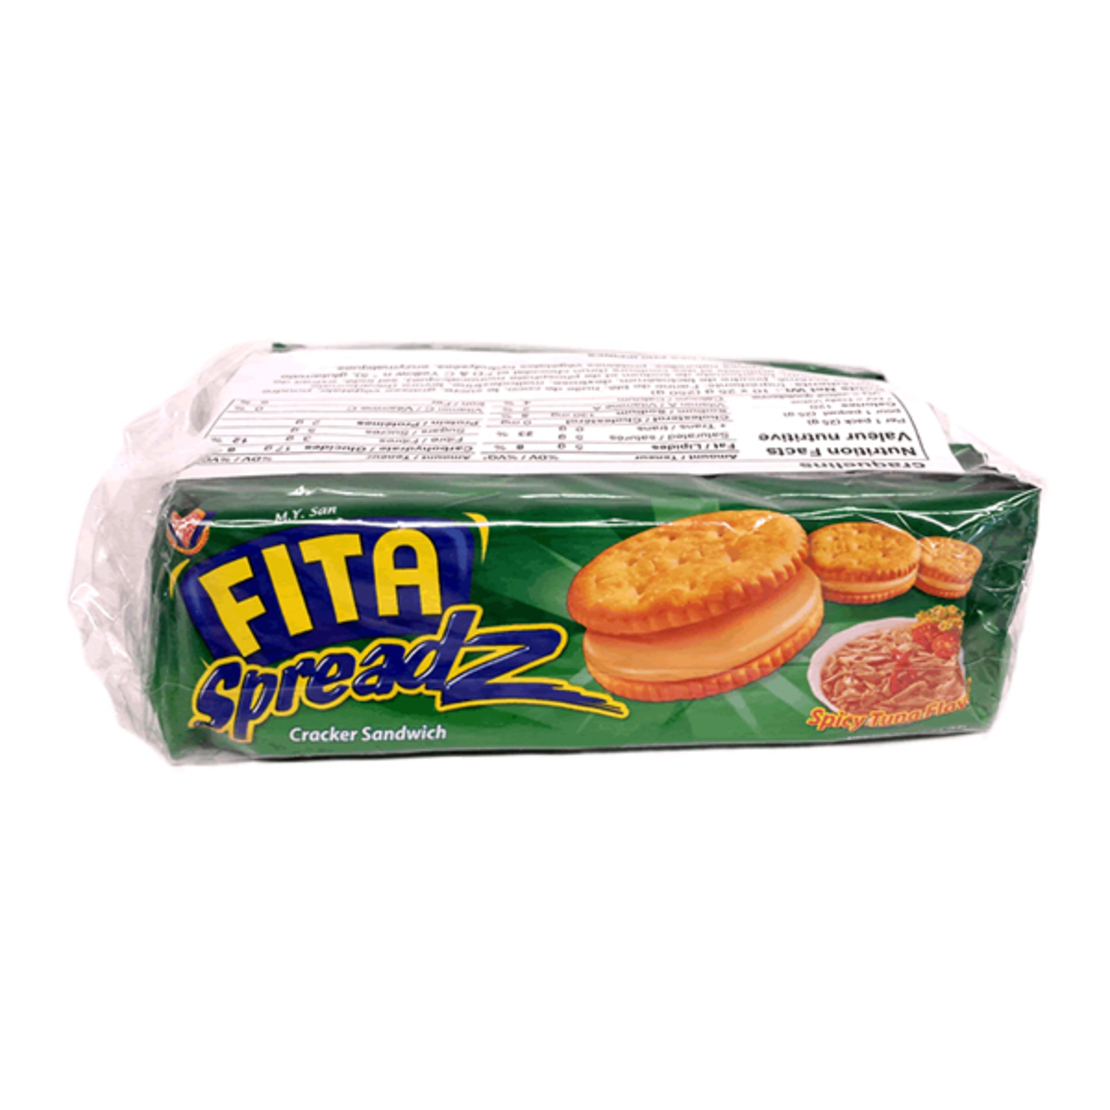 Fita Spreadz - Crackers Sandwich - Spicy Tuna flavor